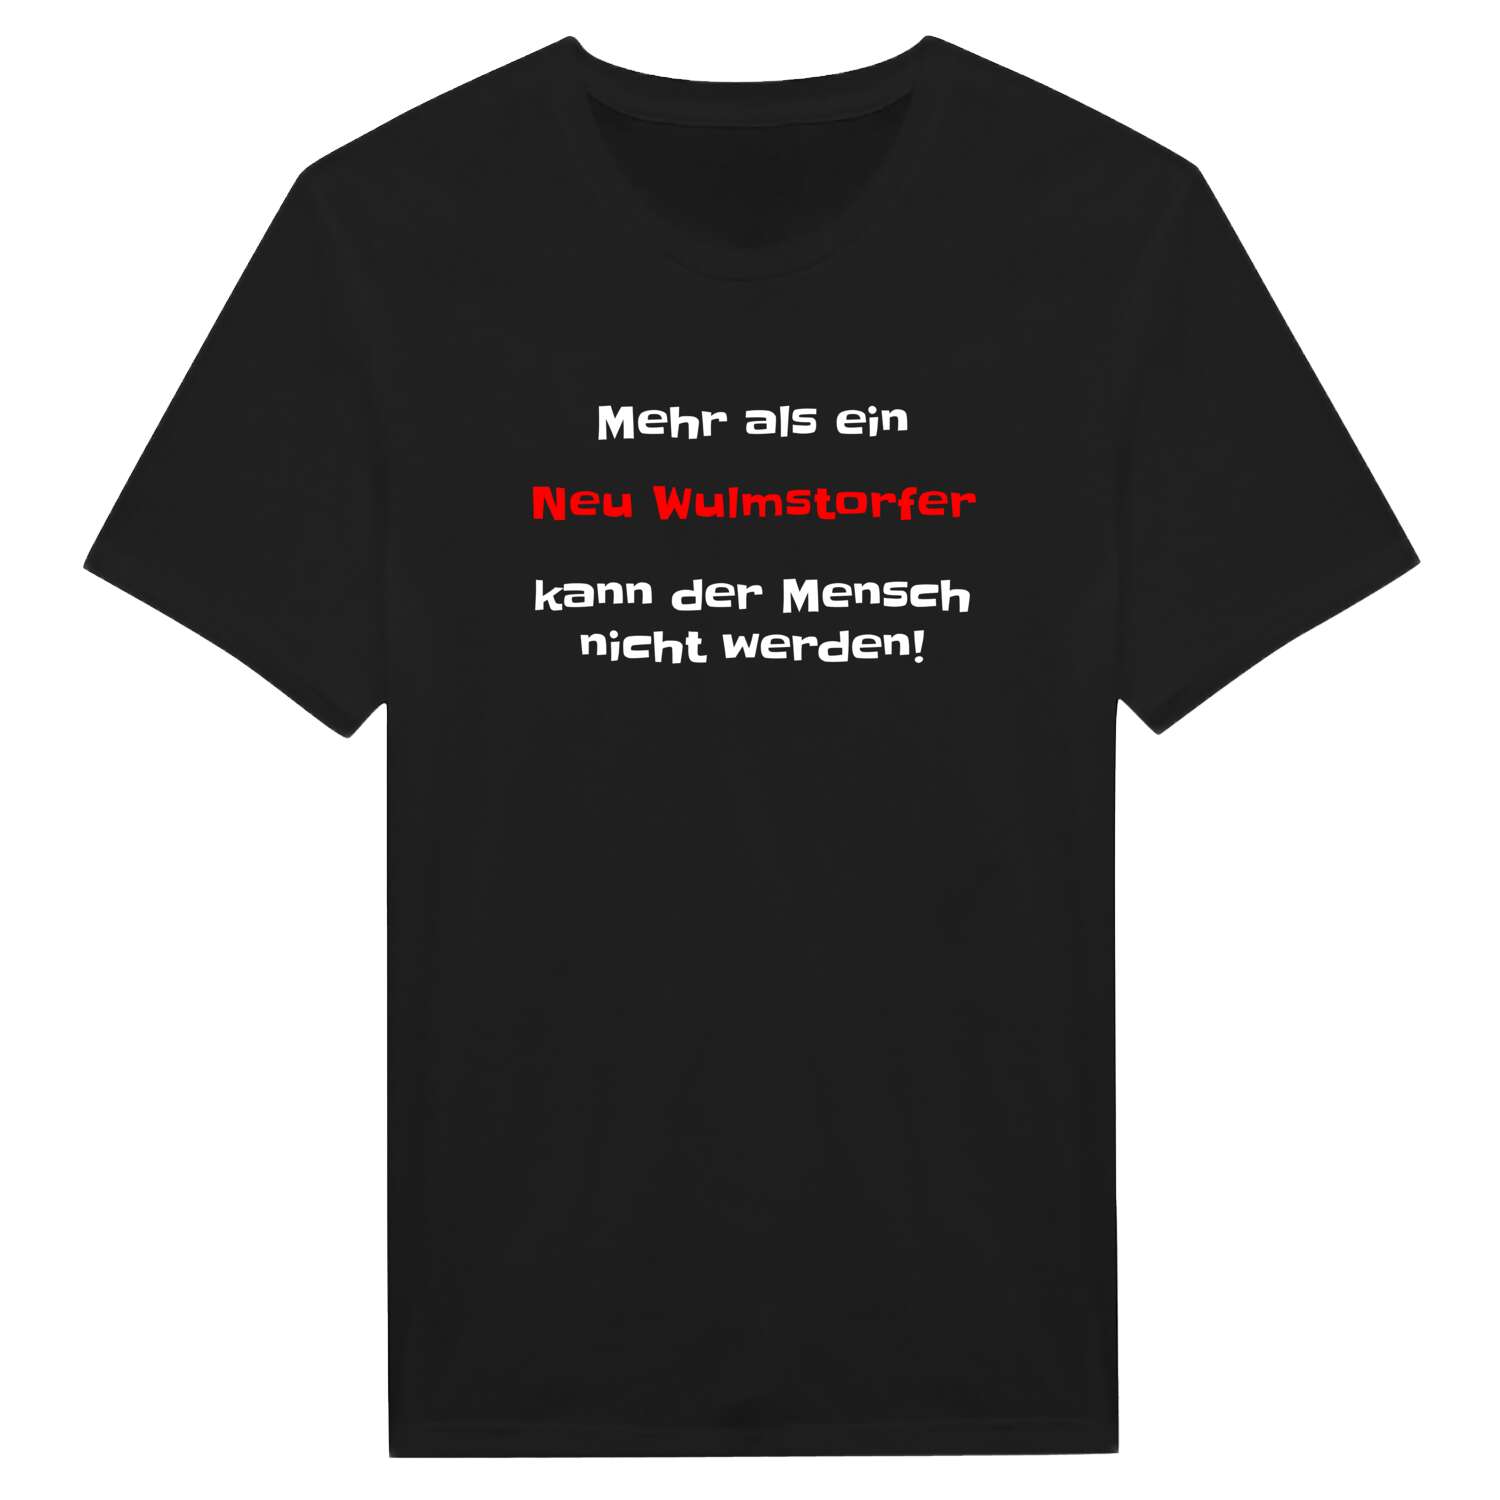 Neu Wulmstorf T-Shirt »Mehr als ein«